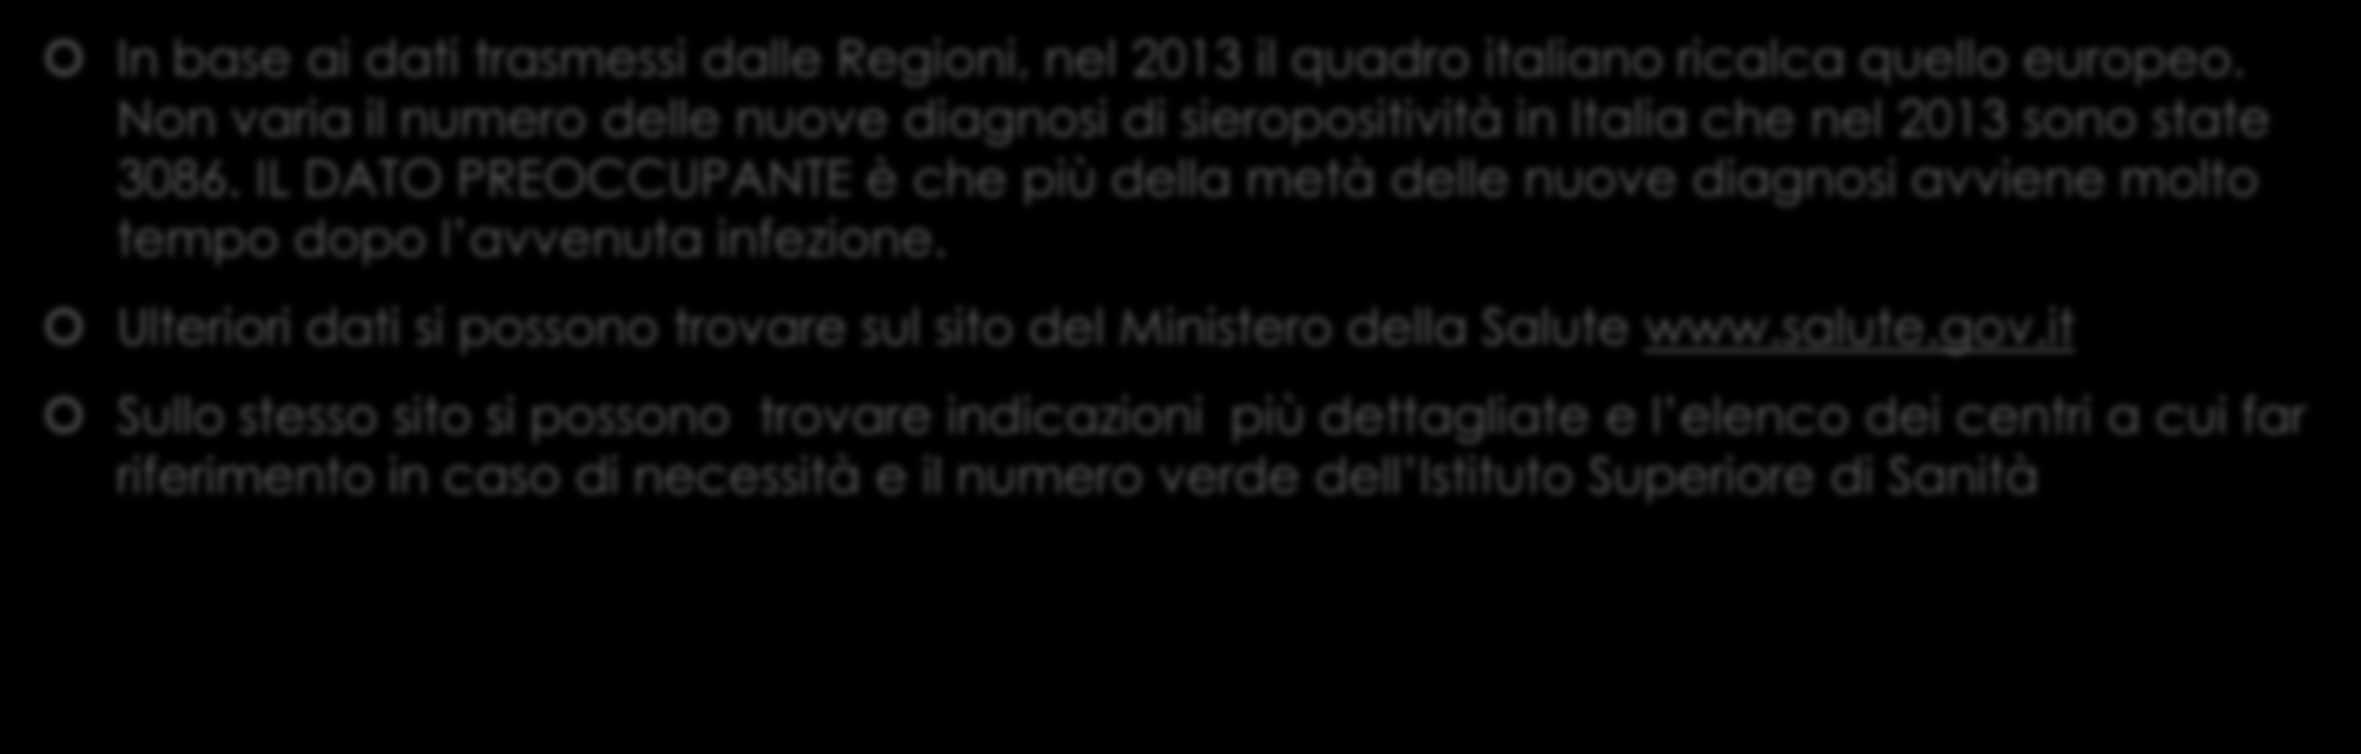 EPIDEMIOLOGIA In base ai dati trasmessi dalle Regioni, nel 2013 il quadro italiano ricalca quello europeo.